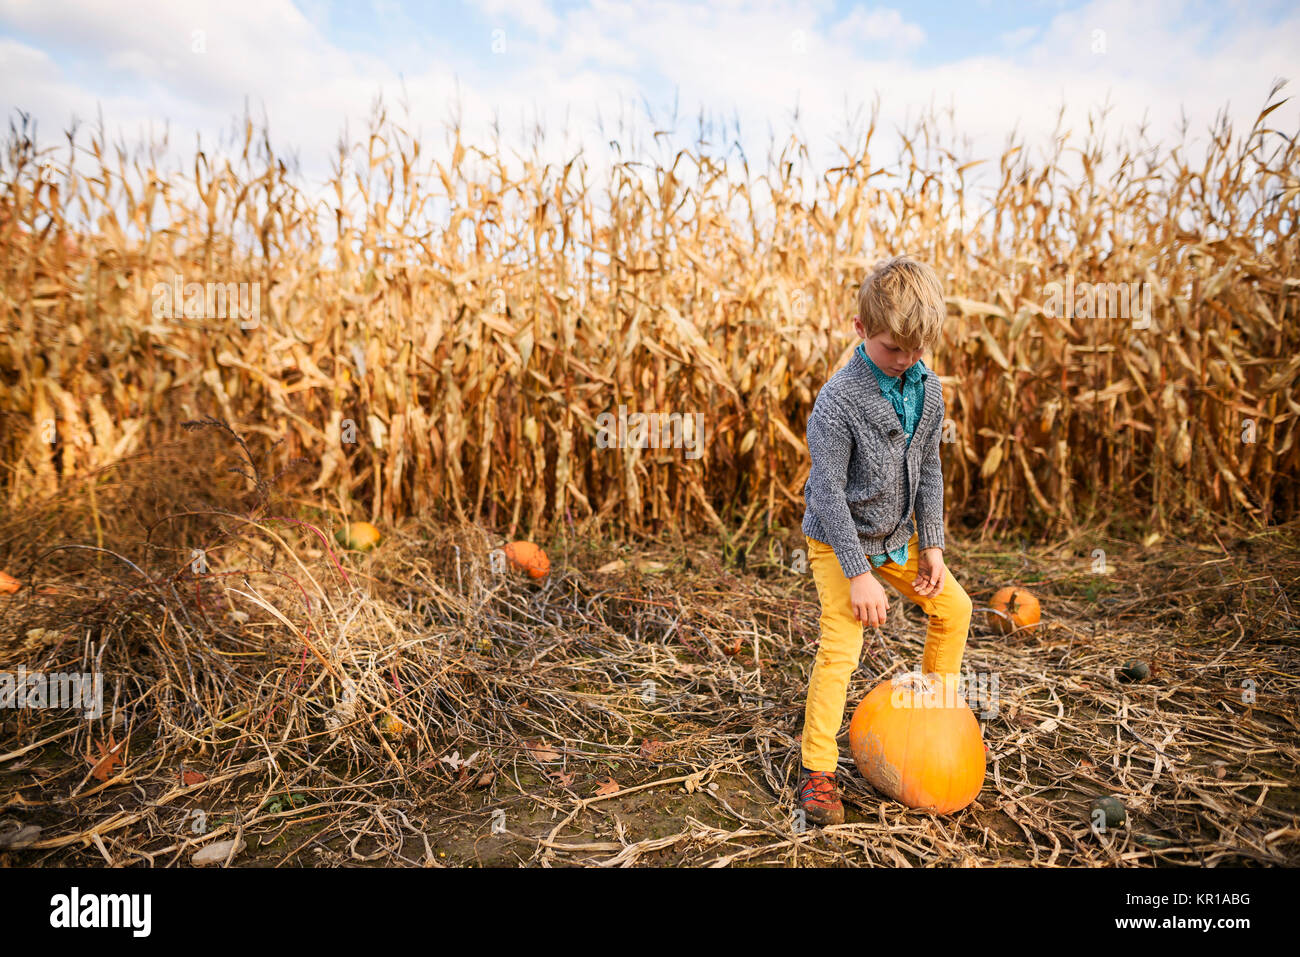 Boy standing in a pumpkin patch next to a pumpkin Stock Photo